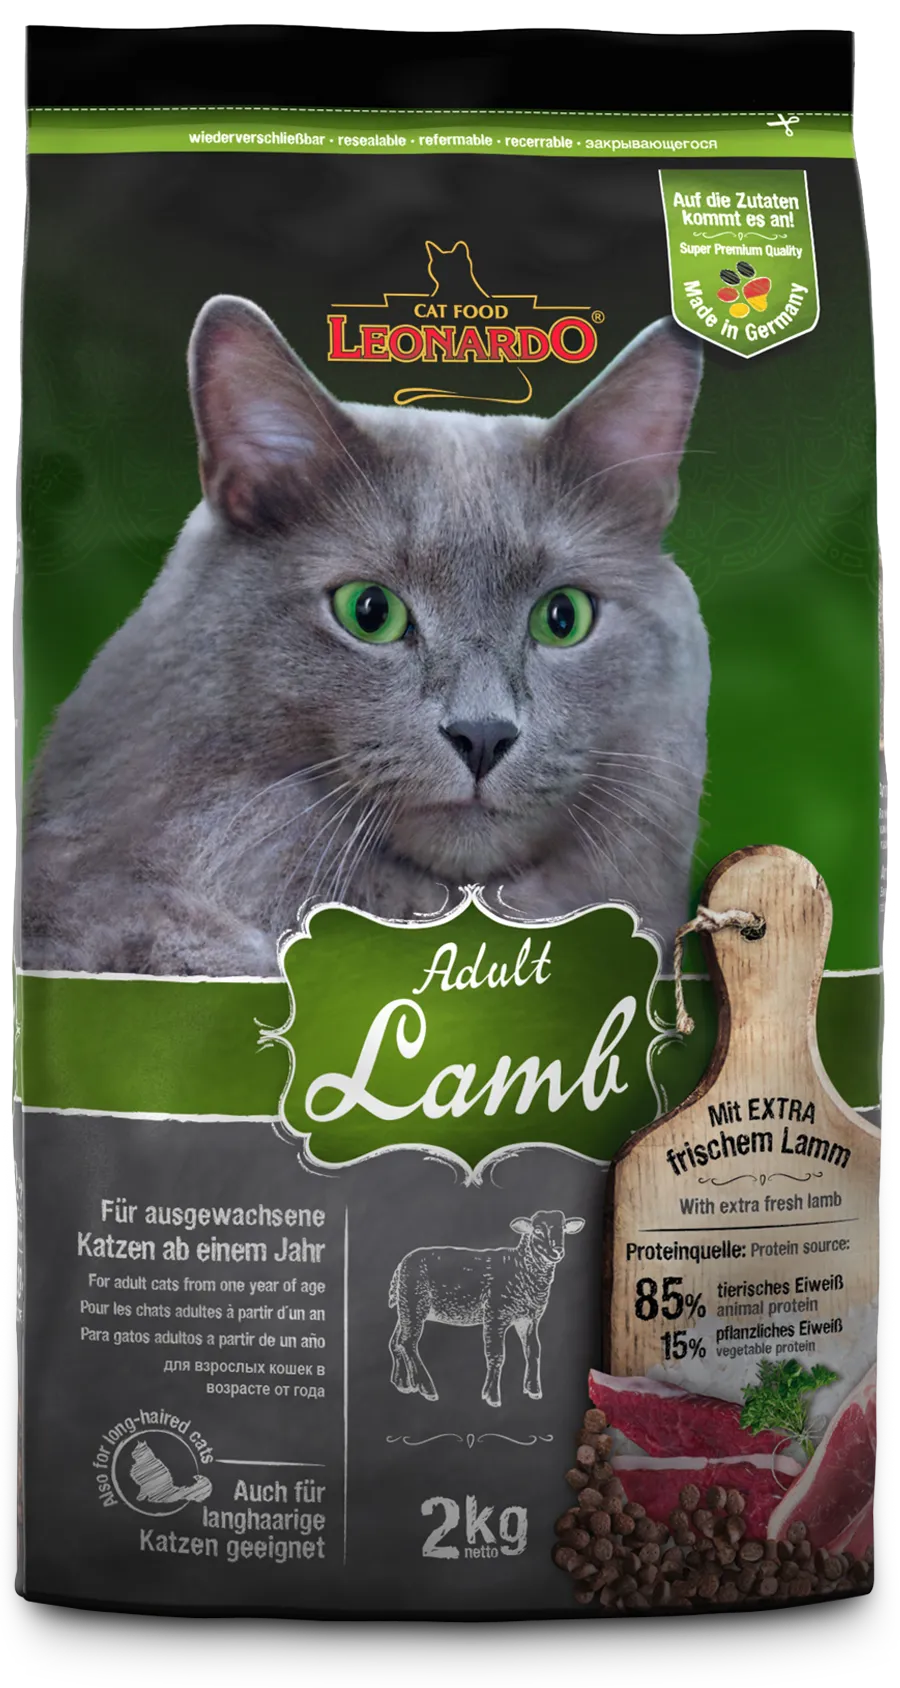 Leonardo-Adult-Lamb-2kg-front_1920x1920